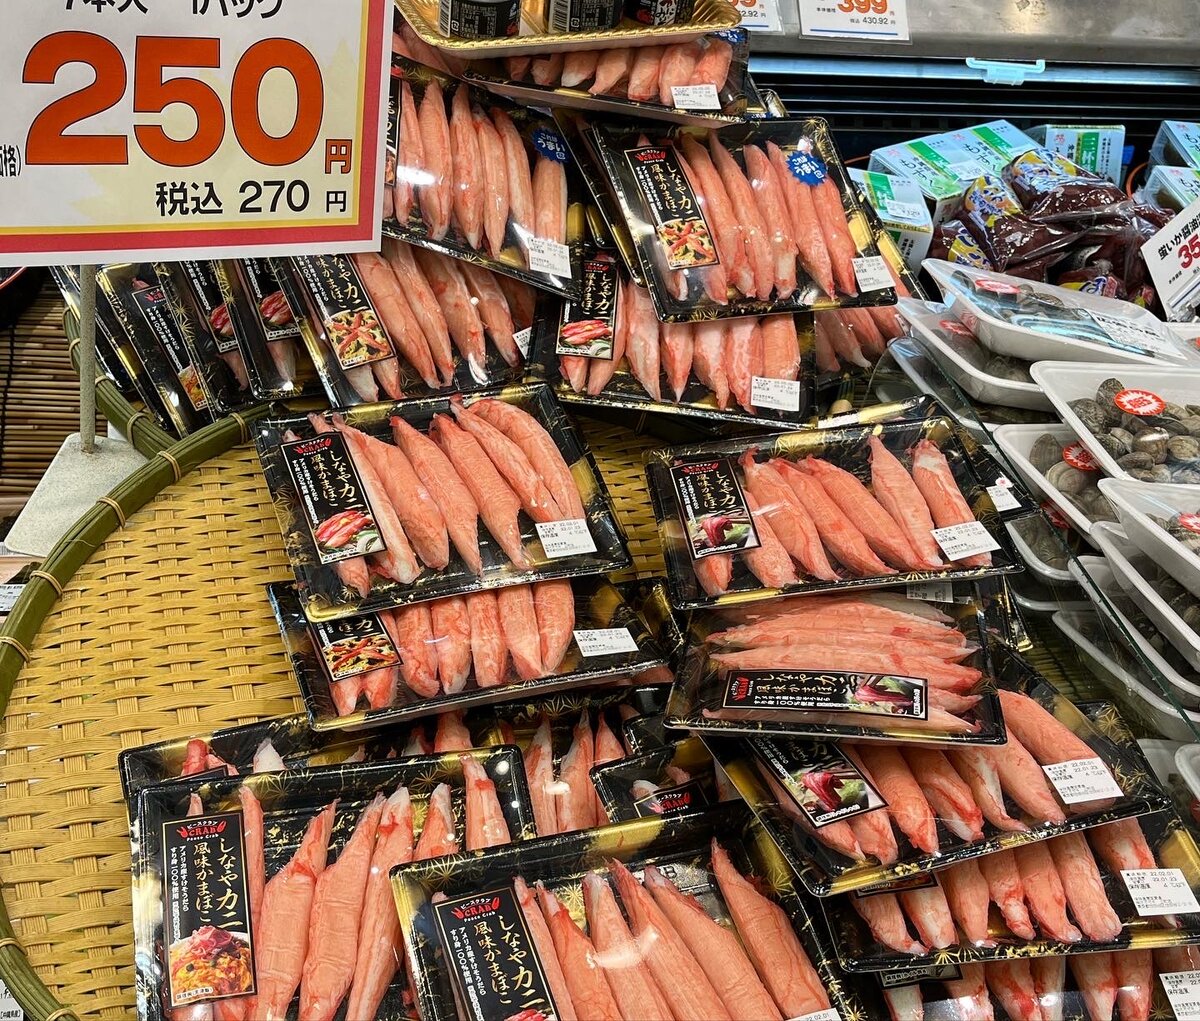 В Японии крабовые палочки готовят из белой рыбы, в основном семейства тресковых, с добавлением крахмала, растительного масла, пищевого красителя, соли, сахара и других специй (у каждого производителя